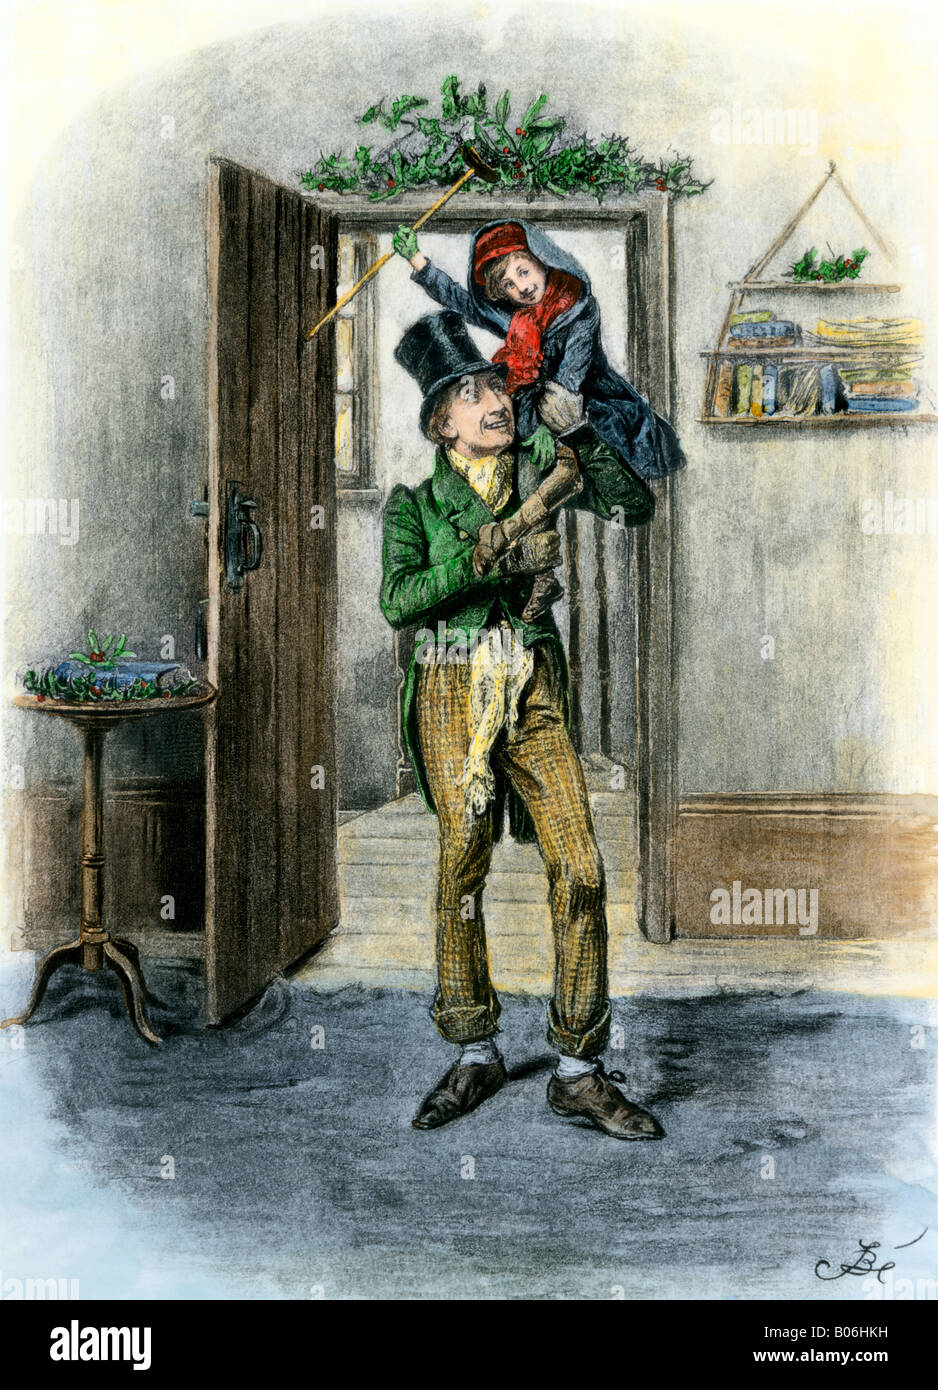 Tiny Tim portati nella celebrazione una illustrazione nella storia di Dickens A Christmas Carol. Colorate a mano fotoincisione di illustrazione. Foto Stock